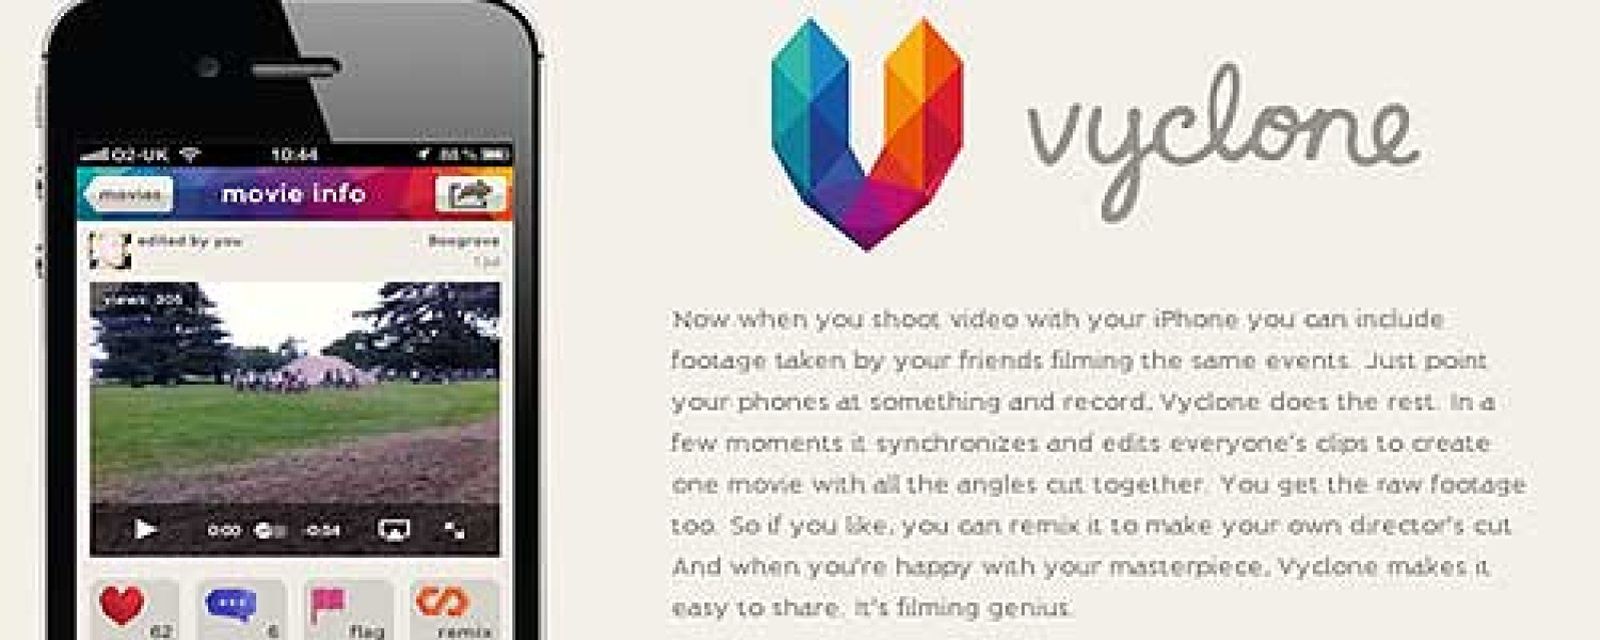 Foto: Vyclone, la nueva 'fiebre' social para el iPhone